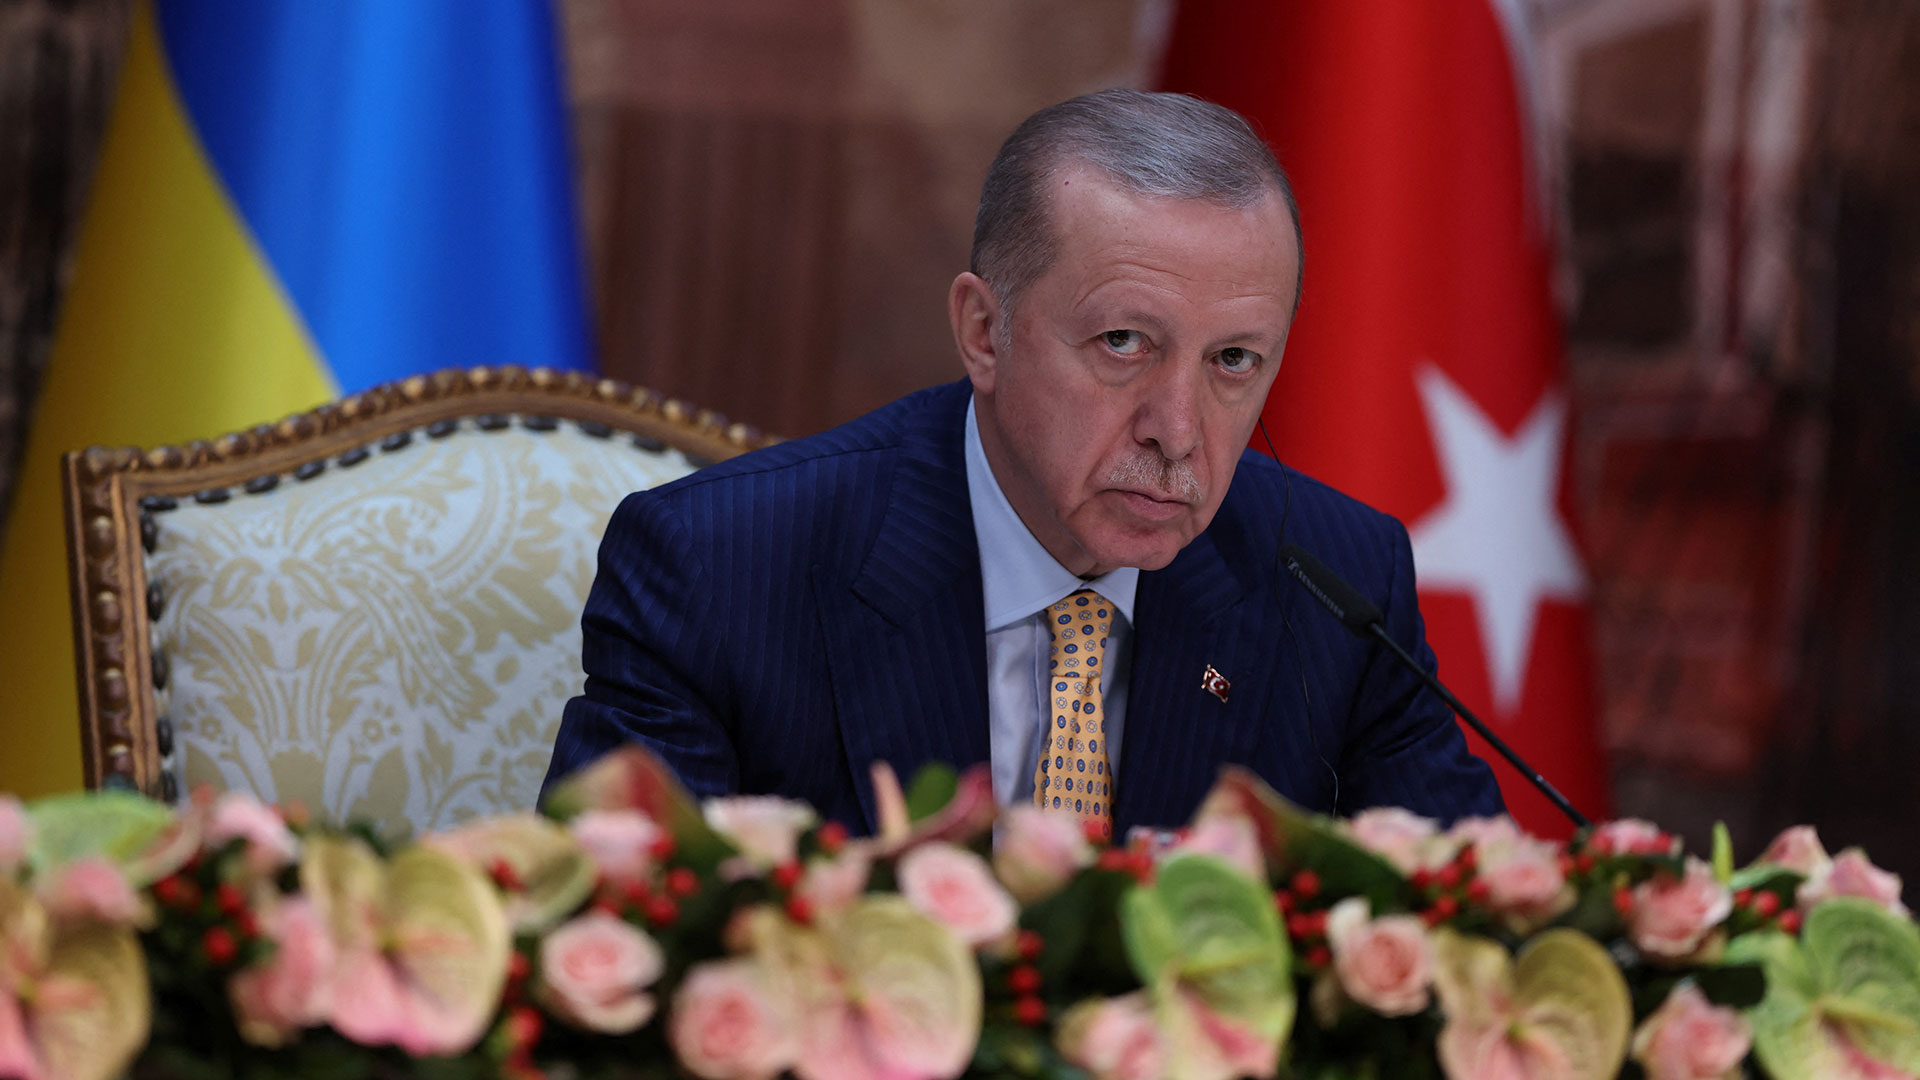 Ο Ερντογάν ανακοίνωσε πότε αποχωρεί από την πολιτική